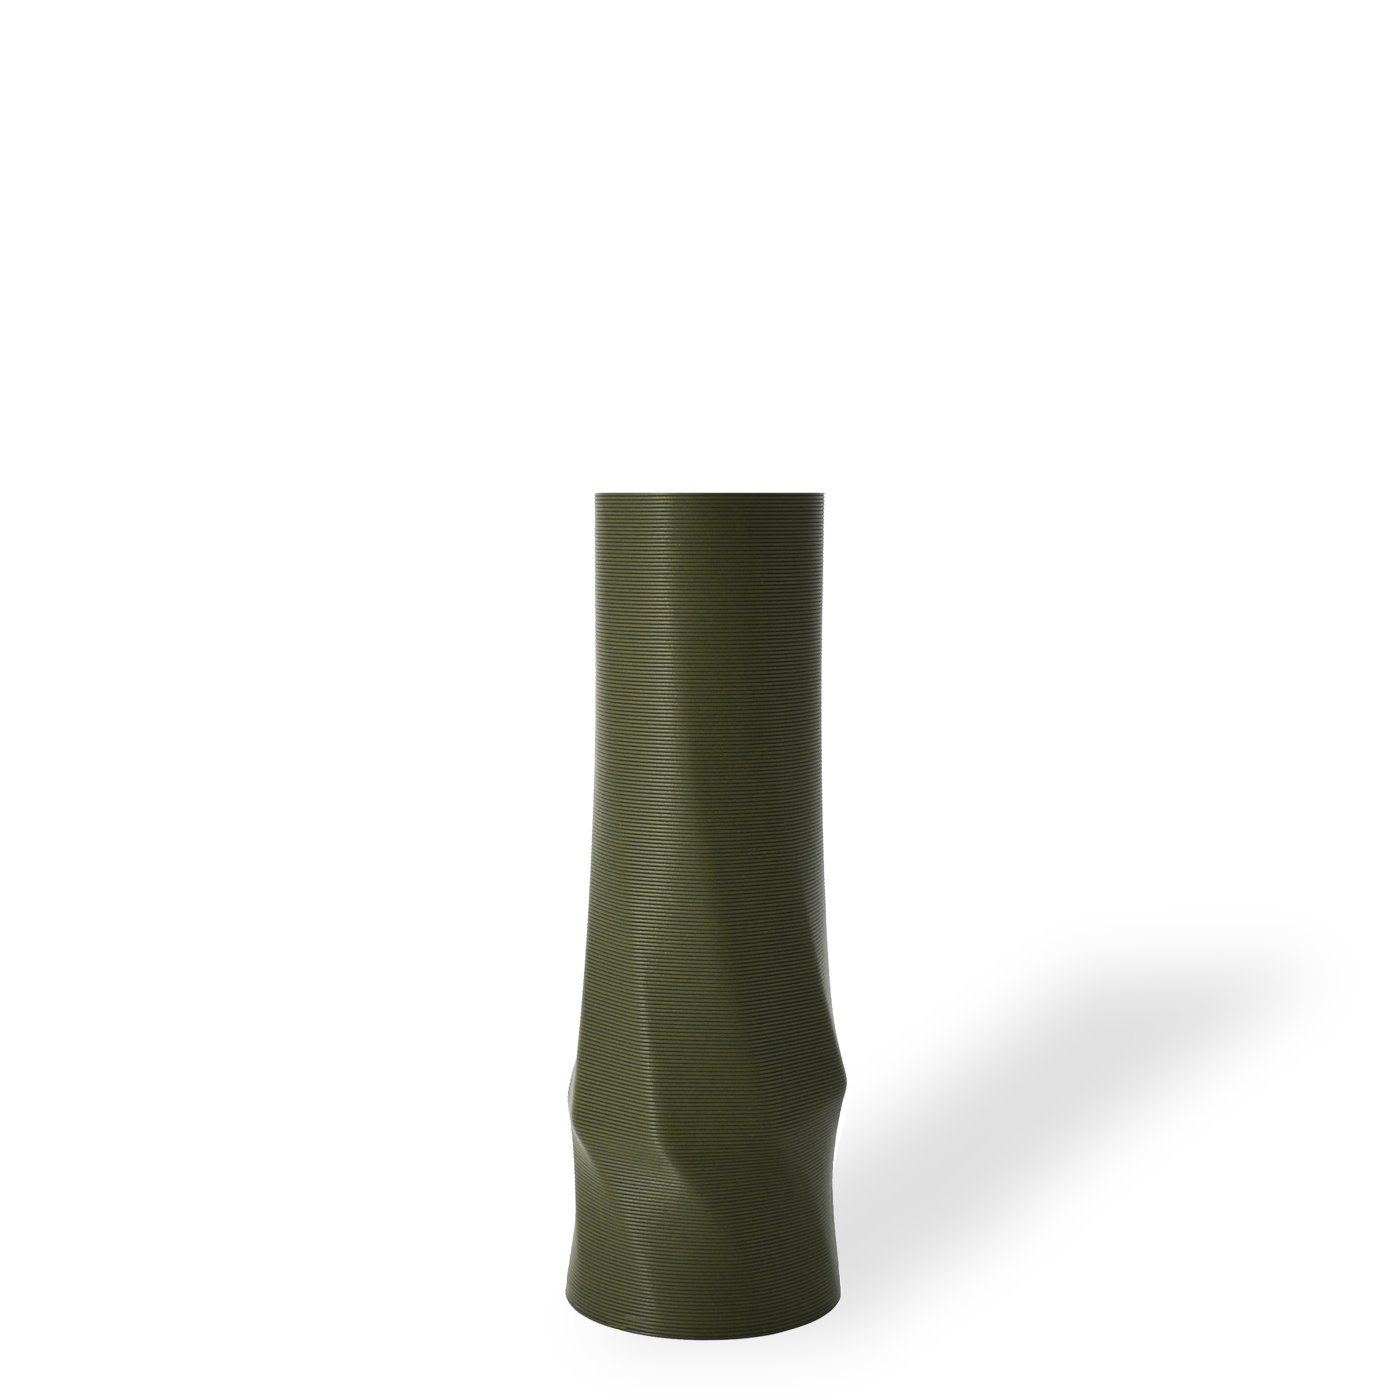 Shapes - Decorations Dekovase the vase - circle (basic), 3D Vasen, viele Farben, 100% 3D-Druck (Einzelmodell, 1 Vase), Wasserdicht; Leichte Struktur innerhalb des Materials (Rillung) Olivgrün